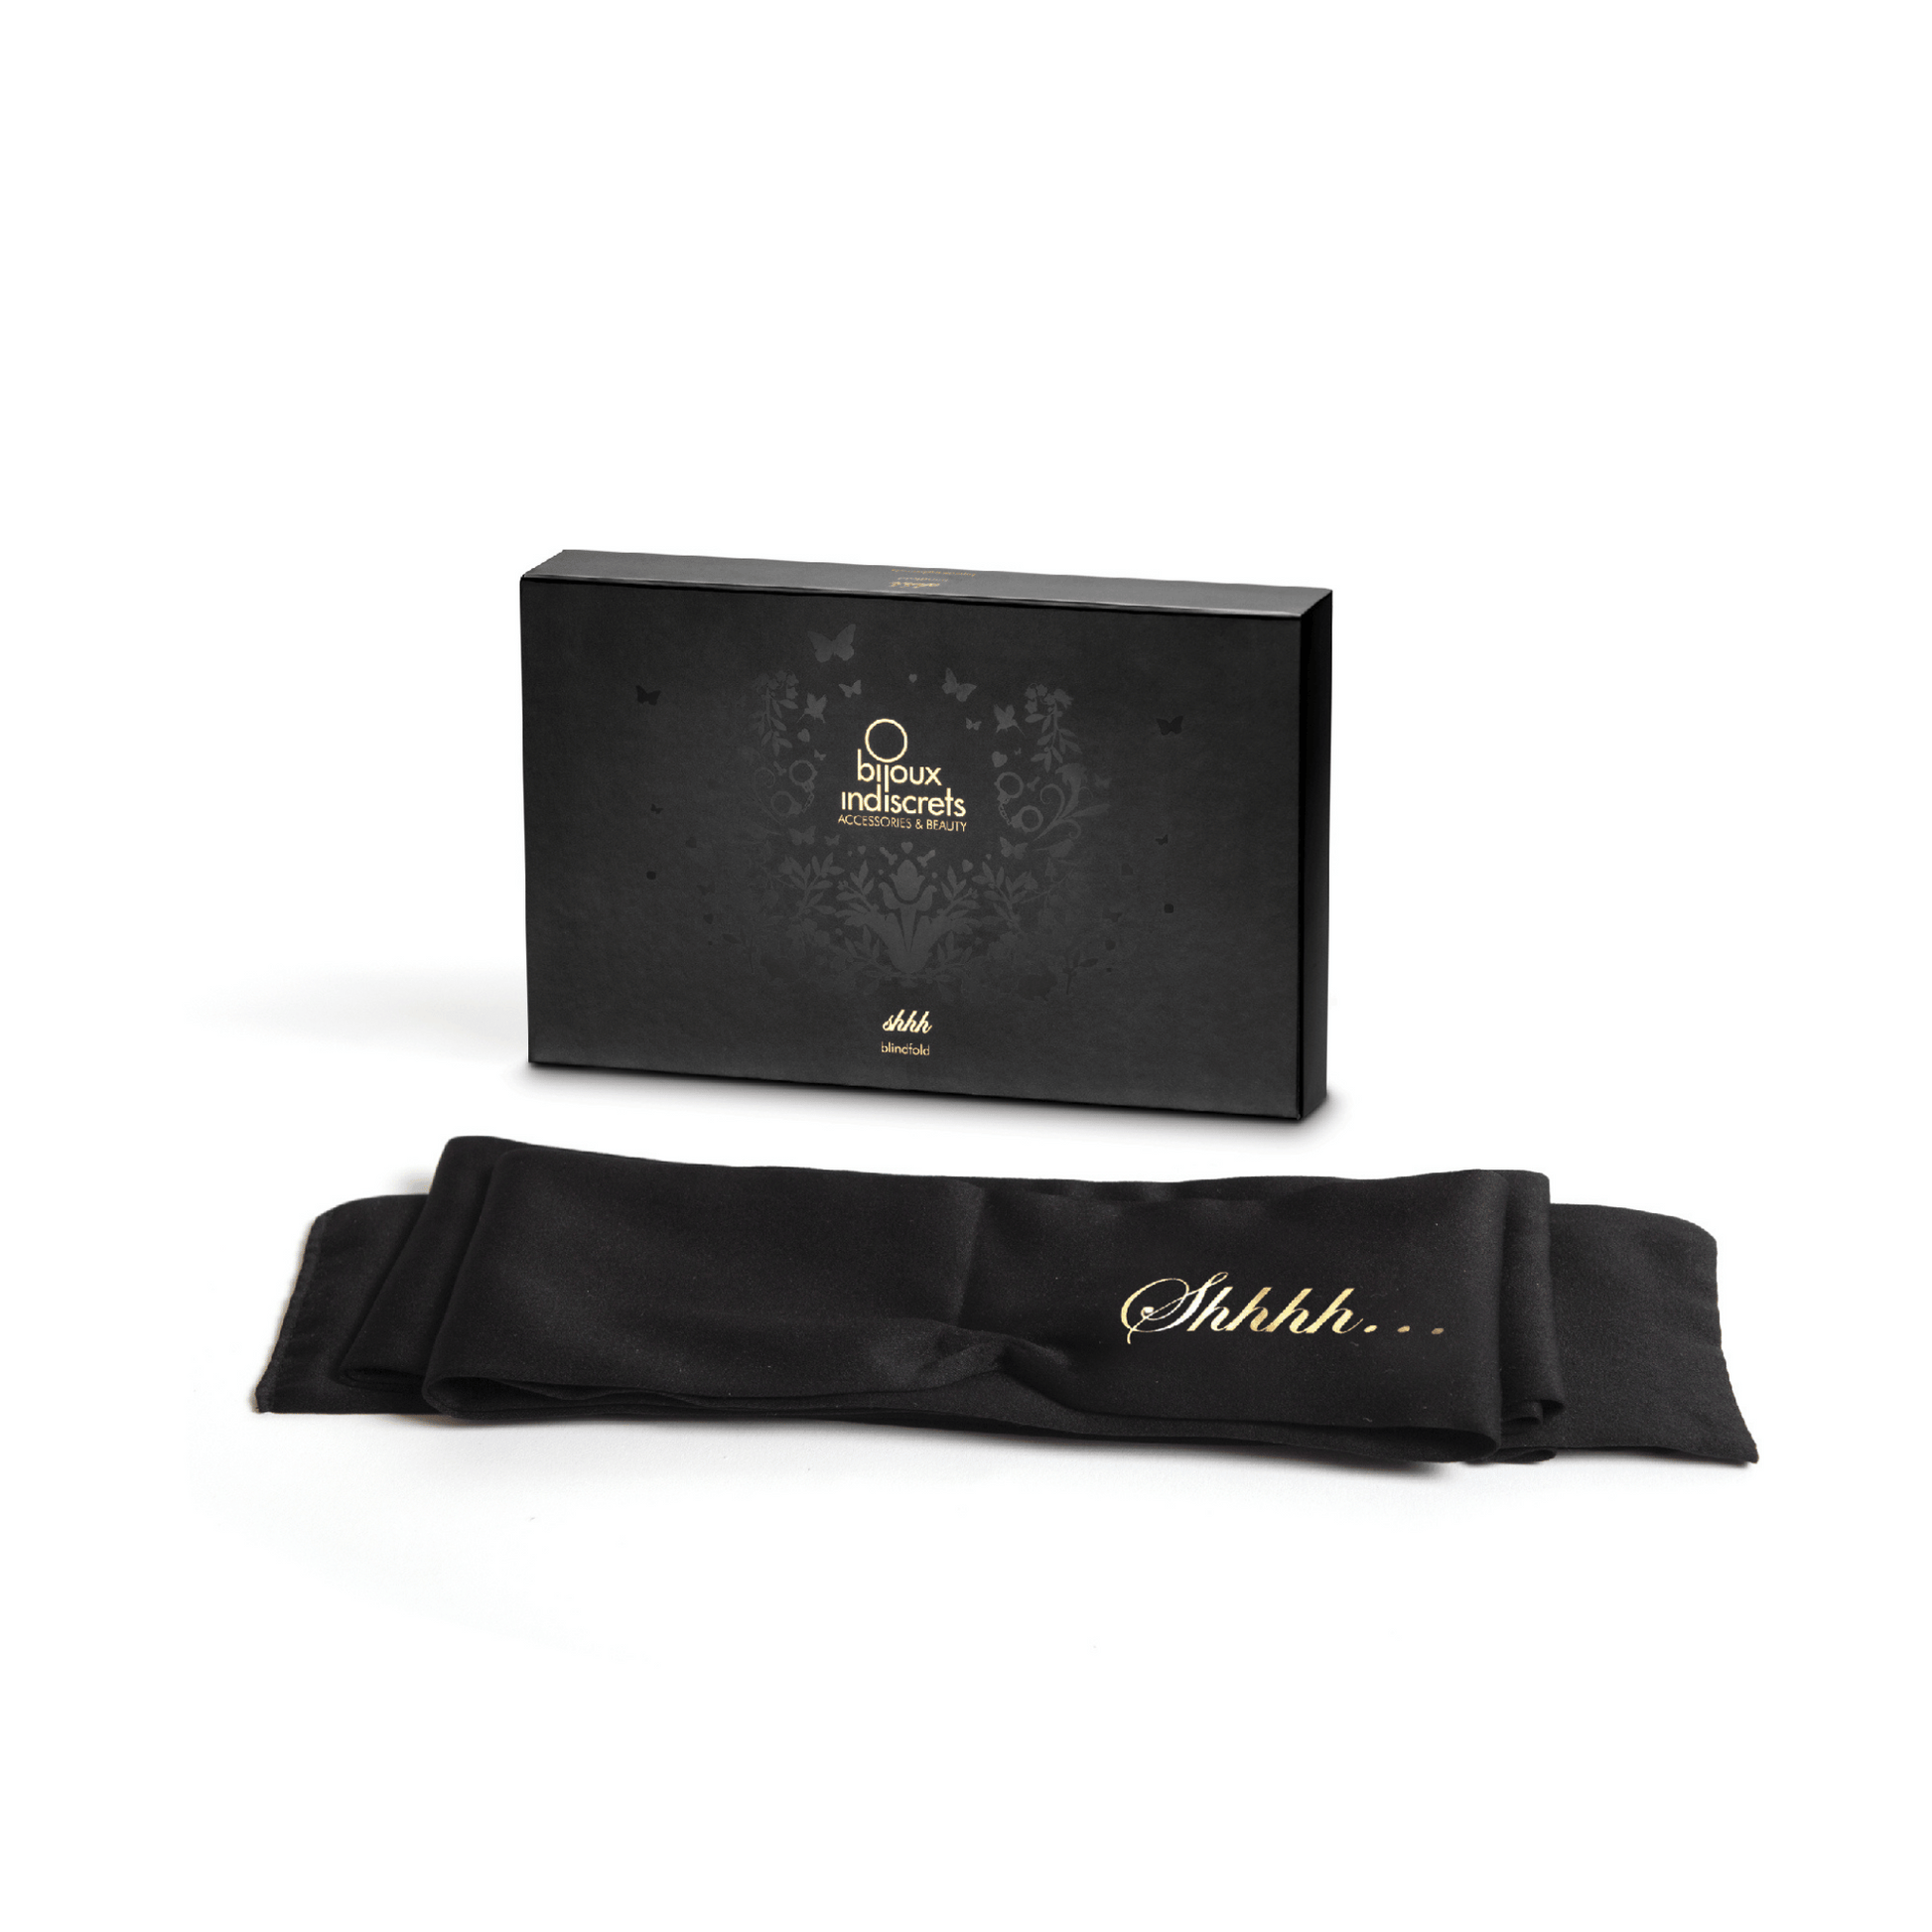 Élégant bandeau en satin noir Shhh de Bijoux Indiscrets dans son emballage raffiné, invitation à la complicité sensuelle chez Oh My God'Z